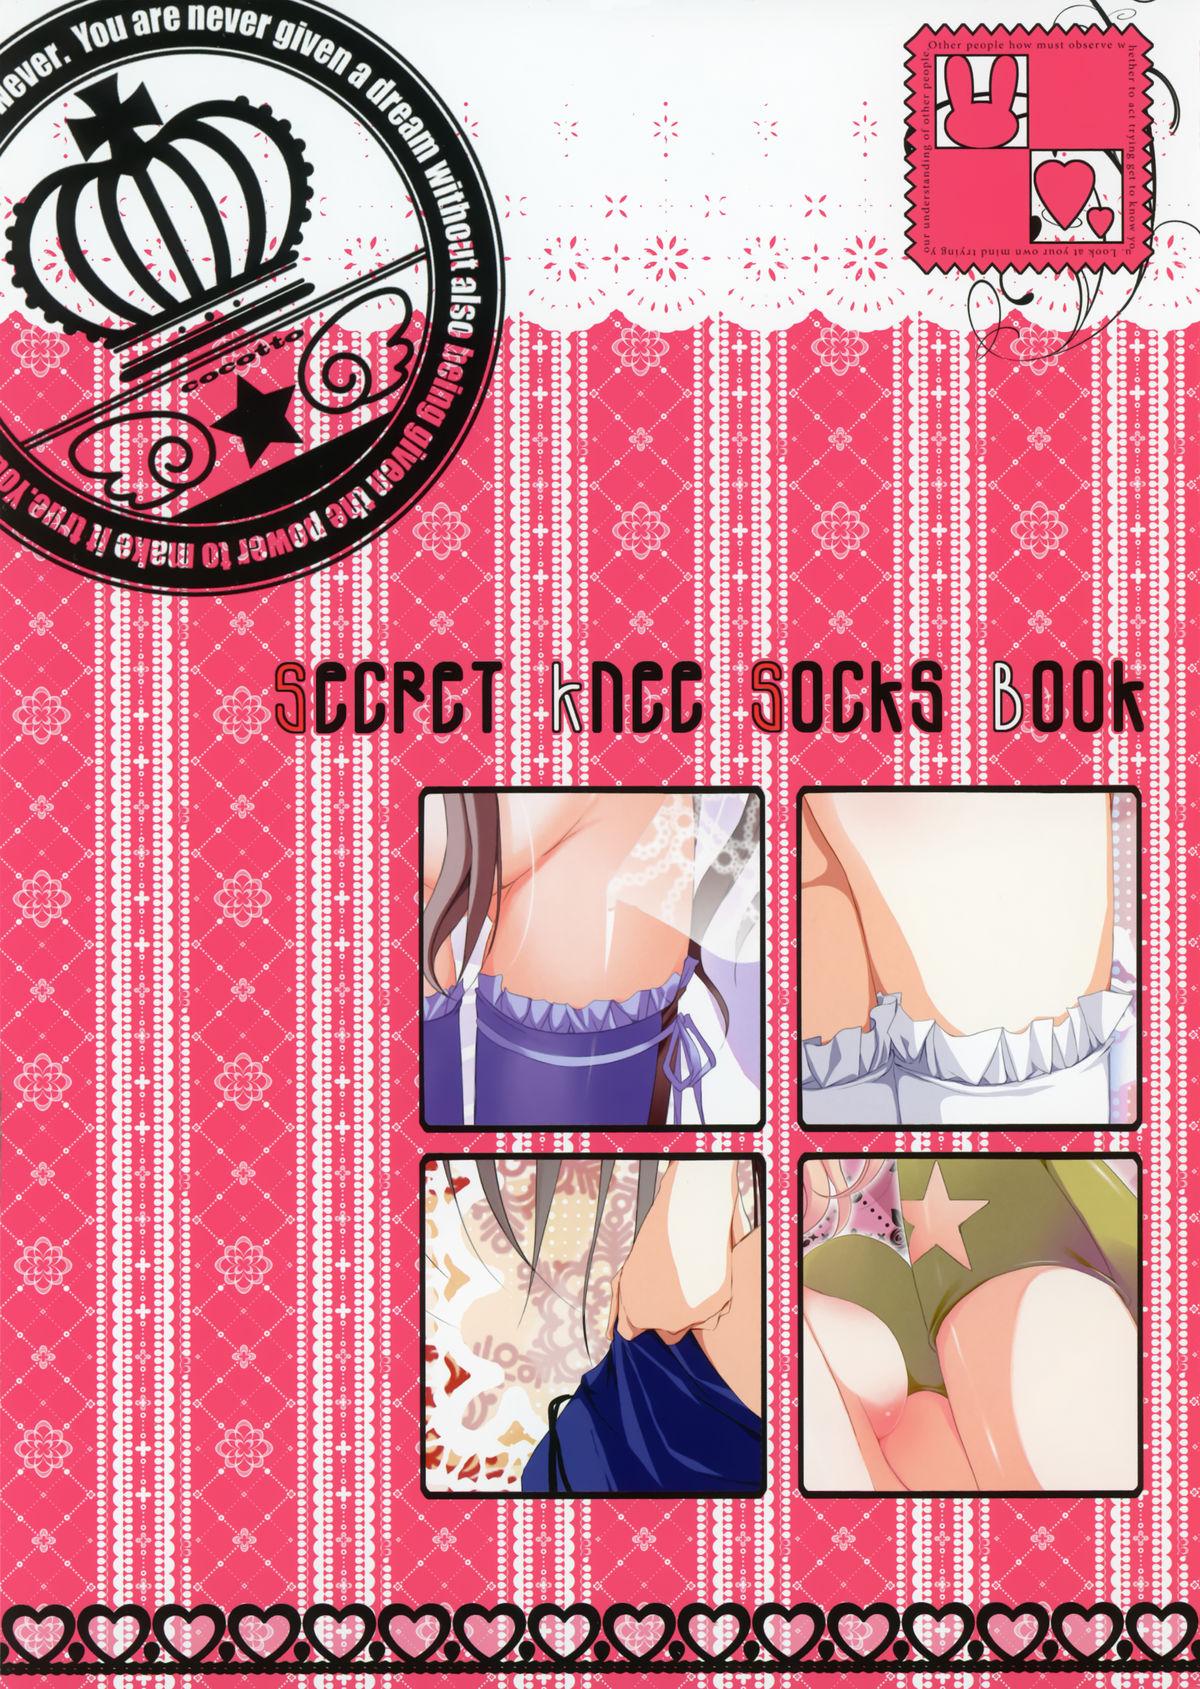 Secret Knee Socks Book 2